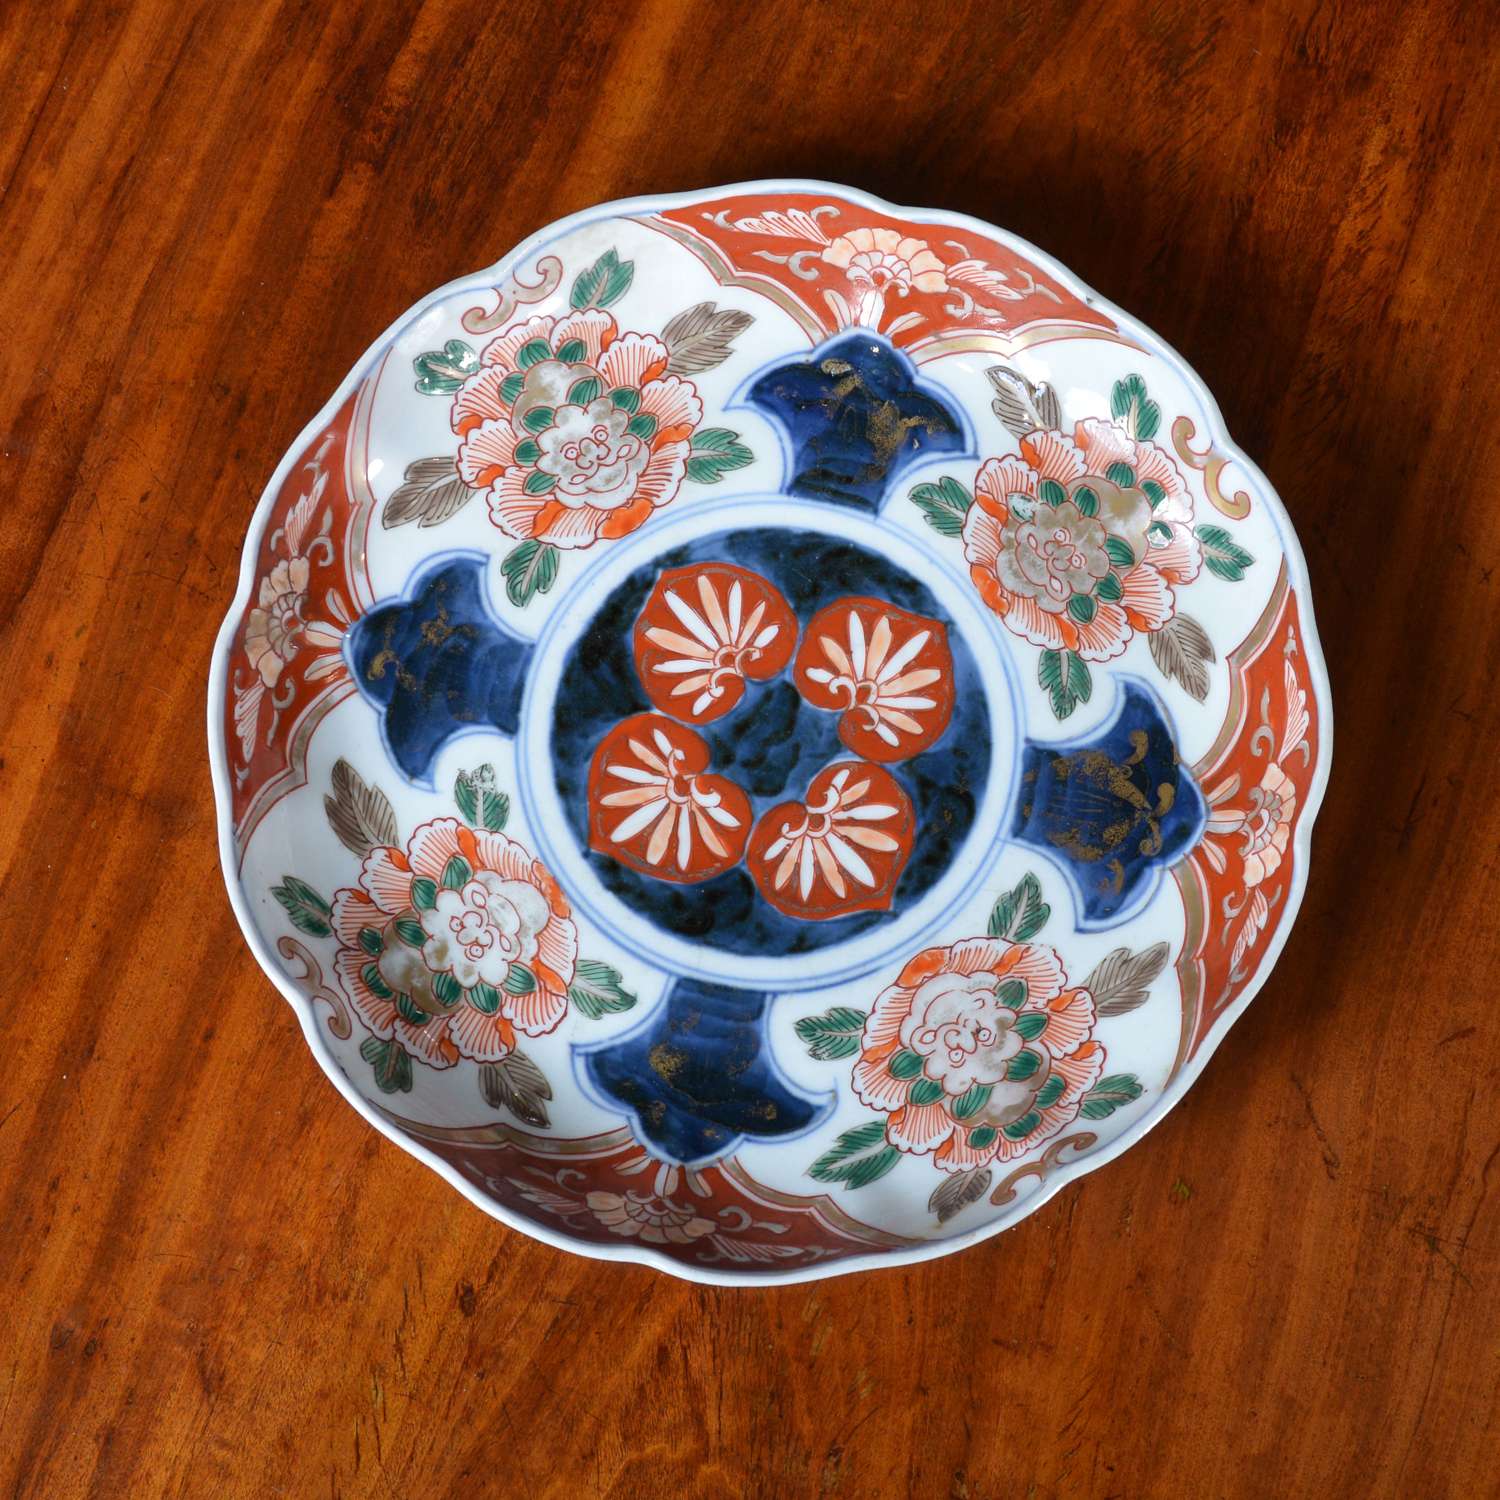 19th century Japanese Imari plate